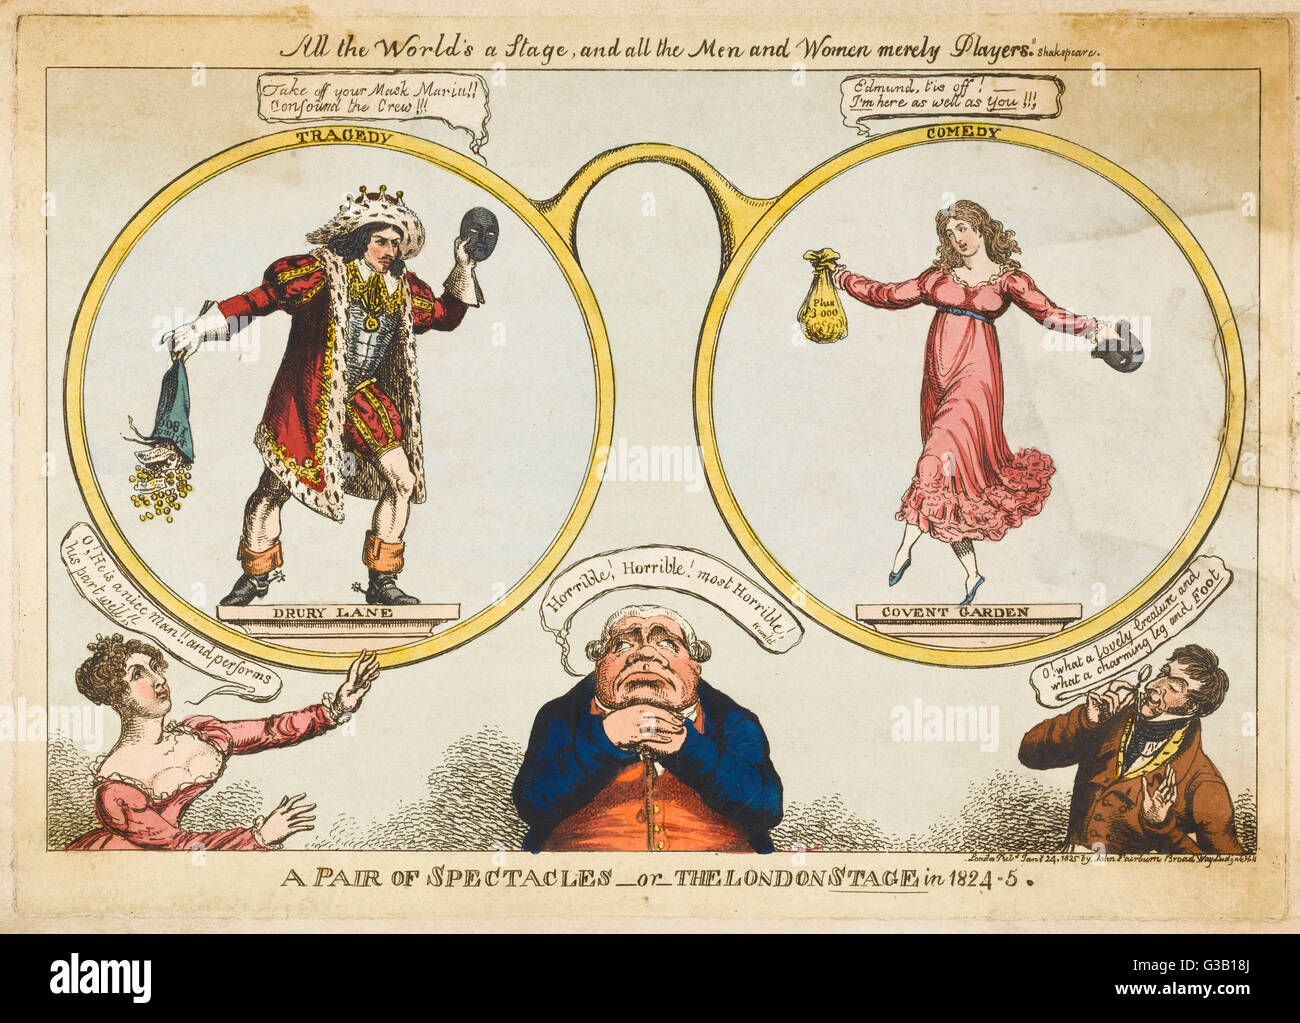 EDMUND KEAN actor inglés en un trágico papel, equilibrando Maria Foote en un cómic: comentarios satíricos sobre la etapa de Londres en 1824-5 Fecha: 1787 - 1833 Foto de stock